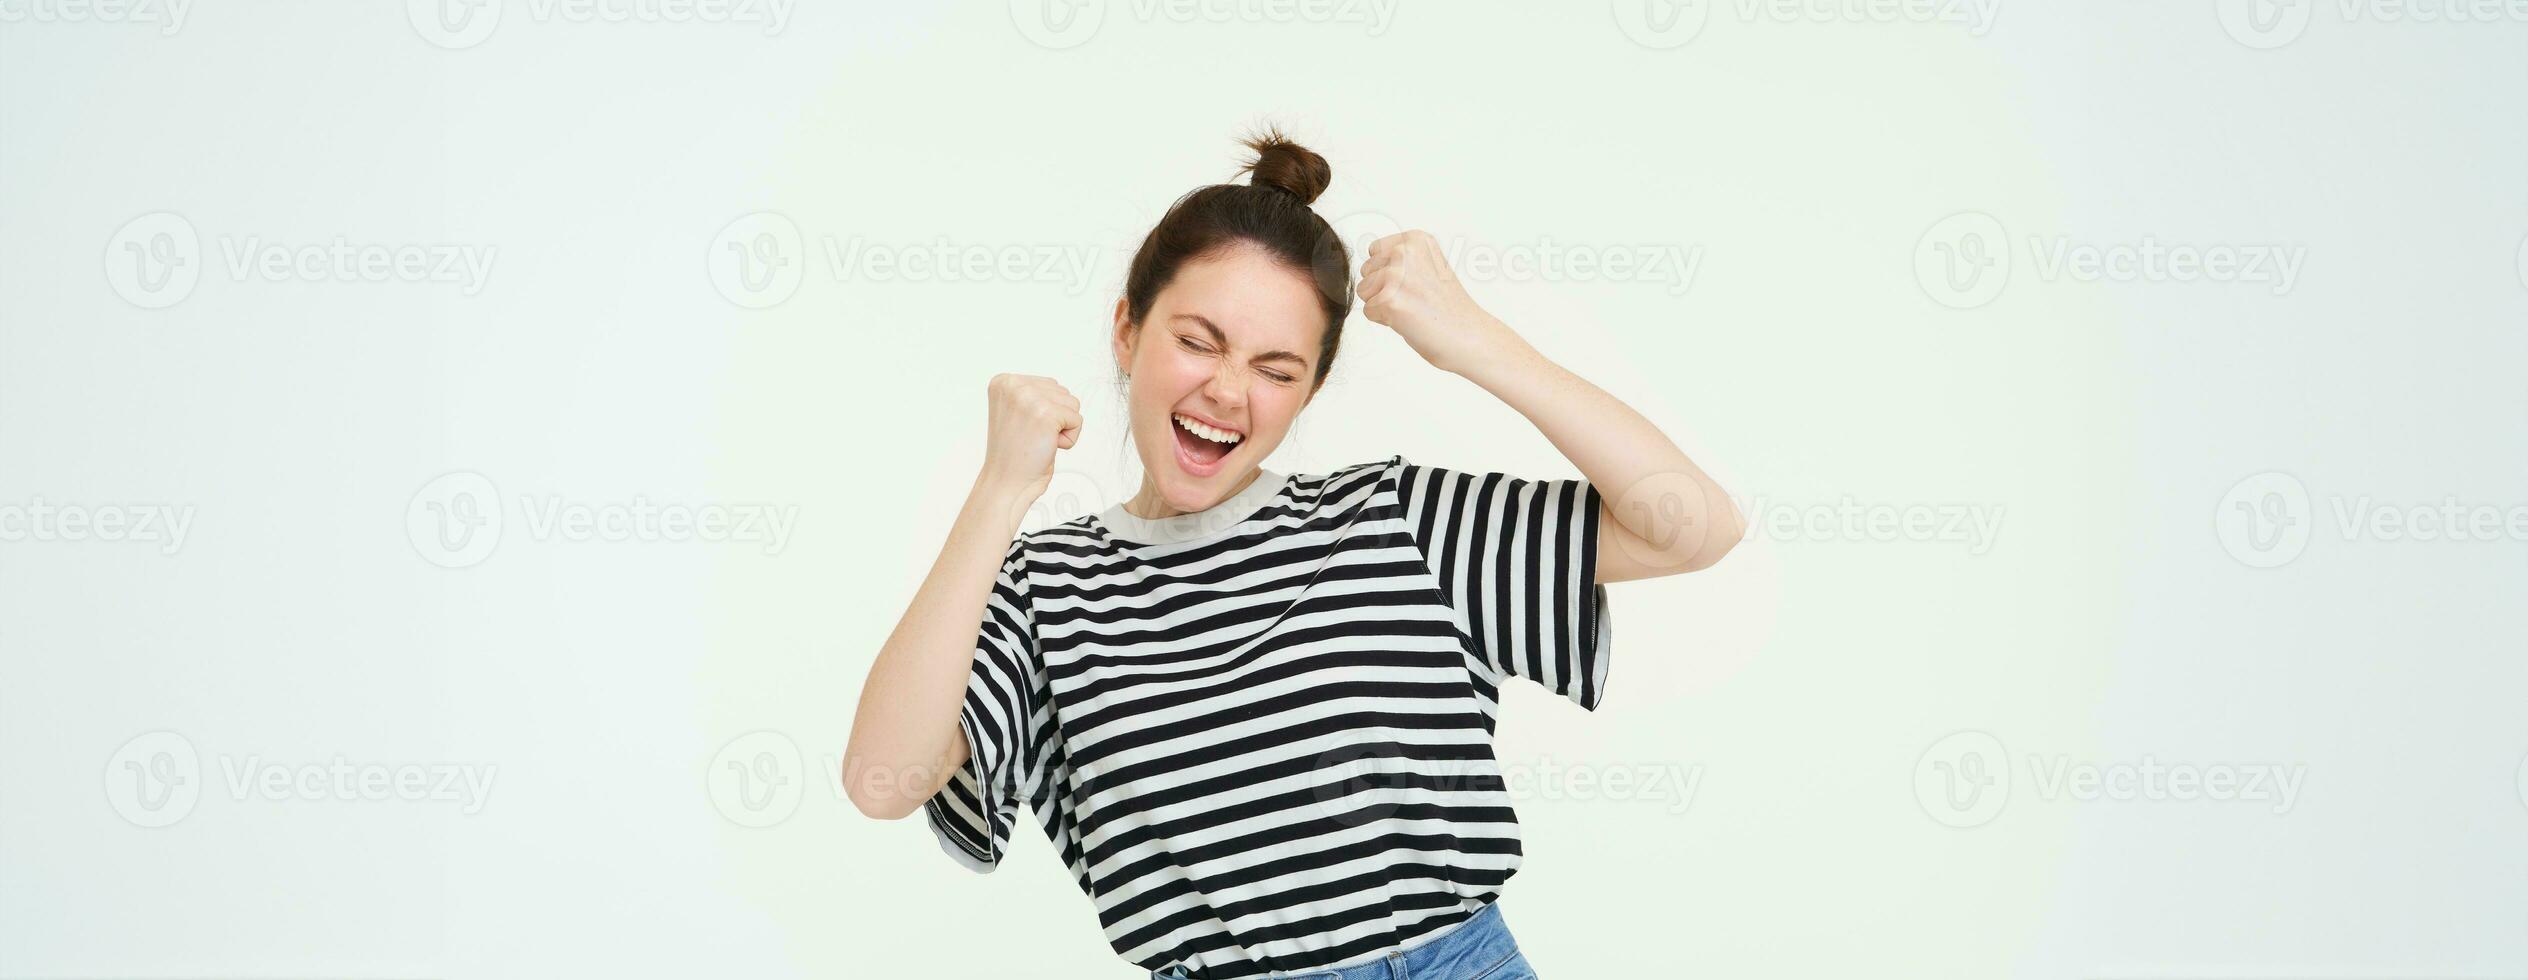 bild av upphetsad ung flicka glädjande, höjning händer upp, skriker från spänning och lycka, vinnande, fira seger, stående över vit bakgrund foto